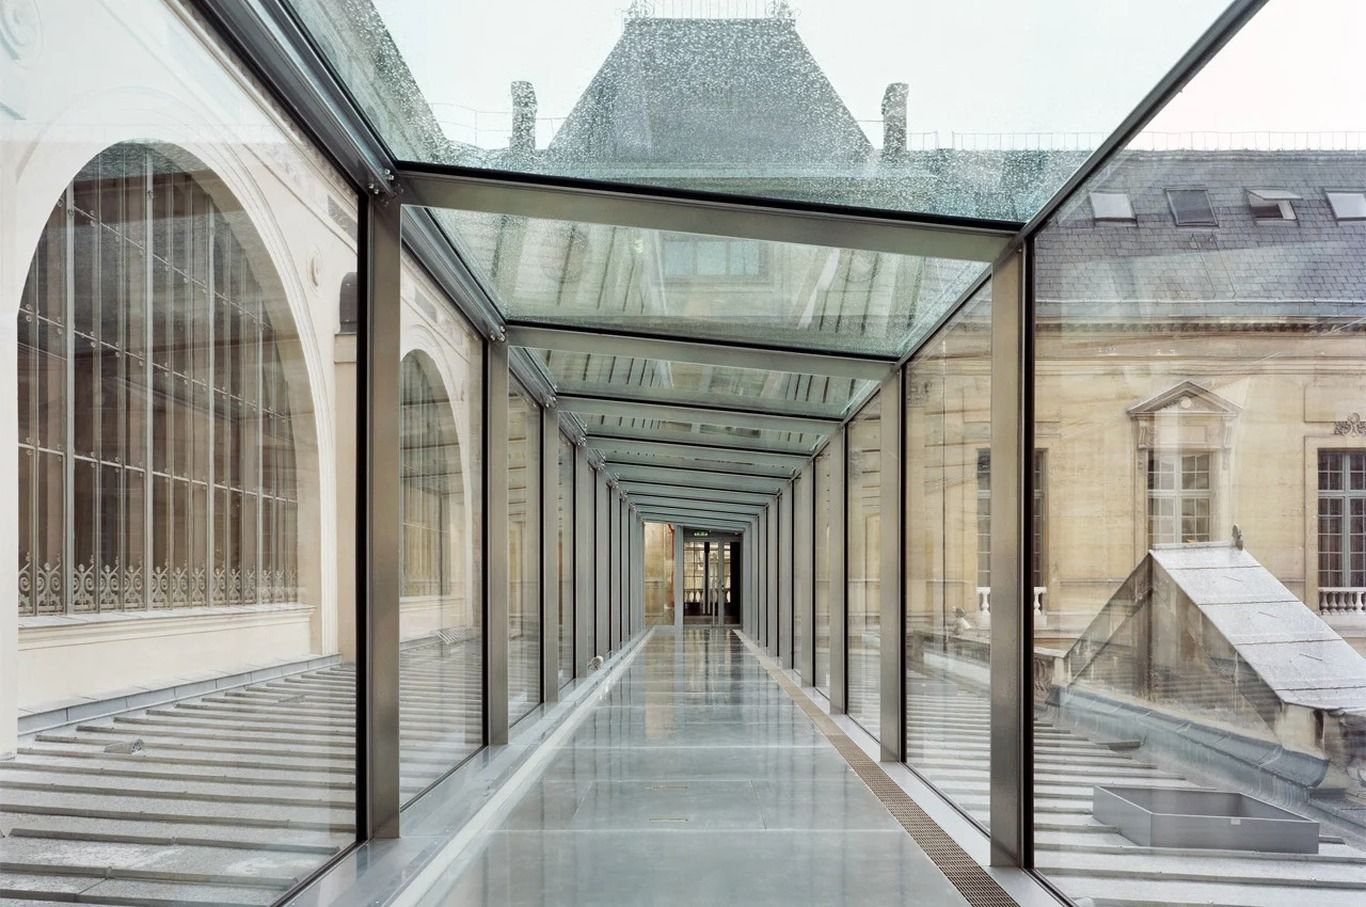 (عکس) بهشت بیضی؛ بازگشت به کتابخانه ملی فرانسه پس از ۱۵ سال بازسازی